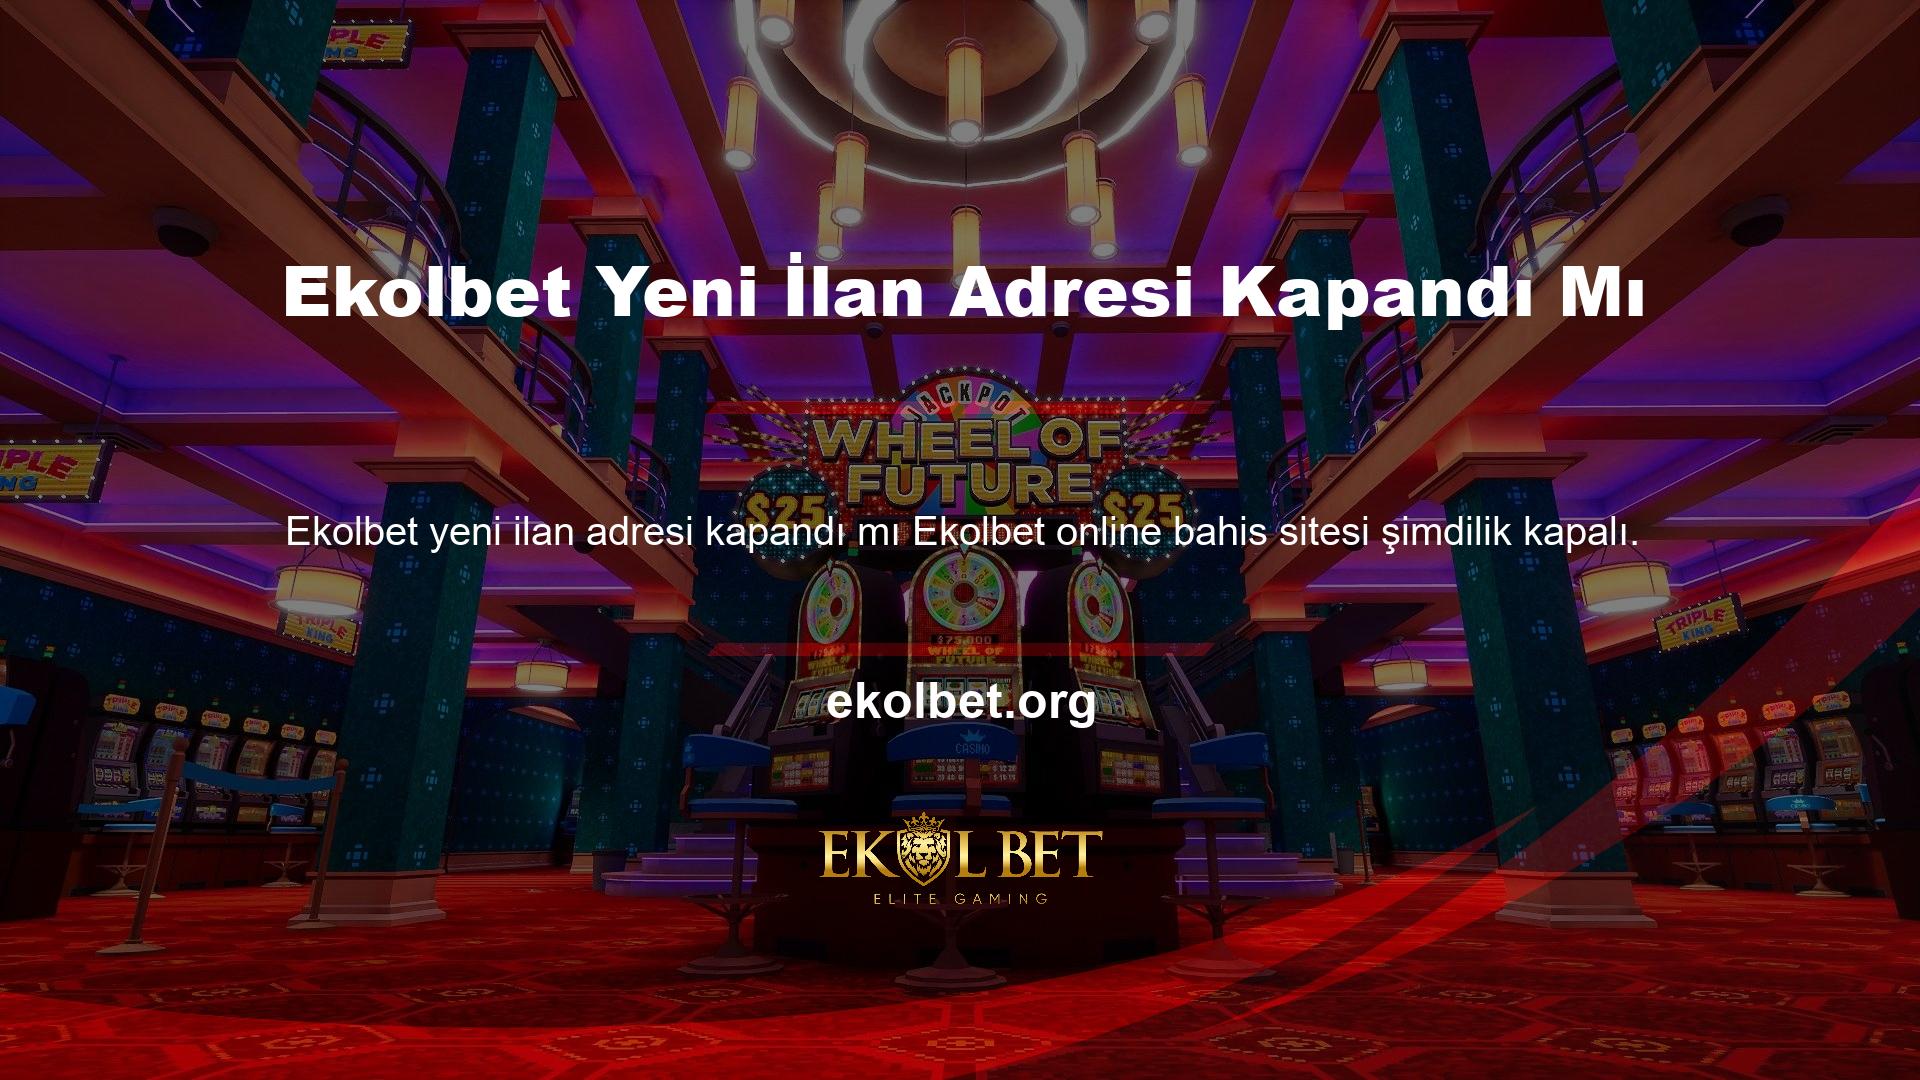 BTK, Türkiye'de yasa dışı olduğu için bu casino sitesine erişimi engelliyor